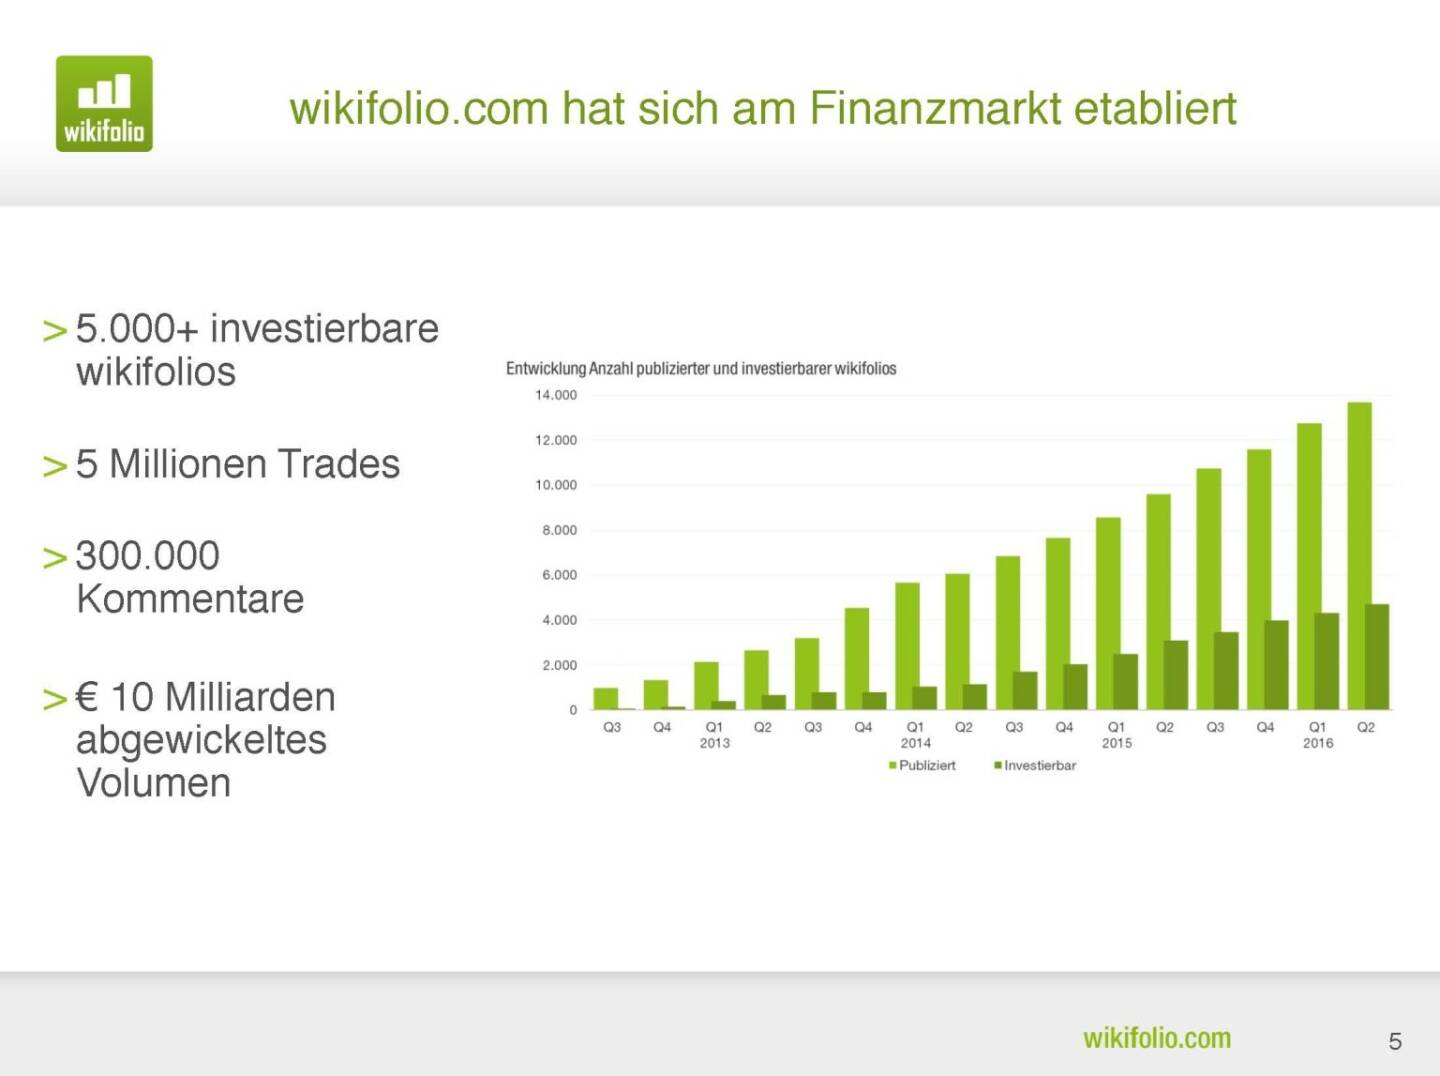 wikifolio.com - hat sich am Finanzmarkt etabliert